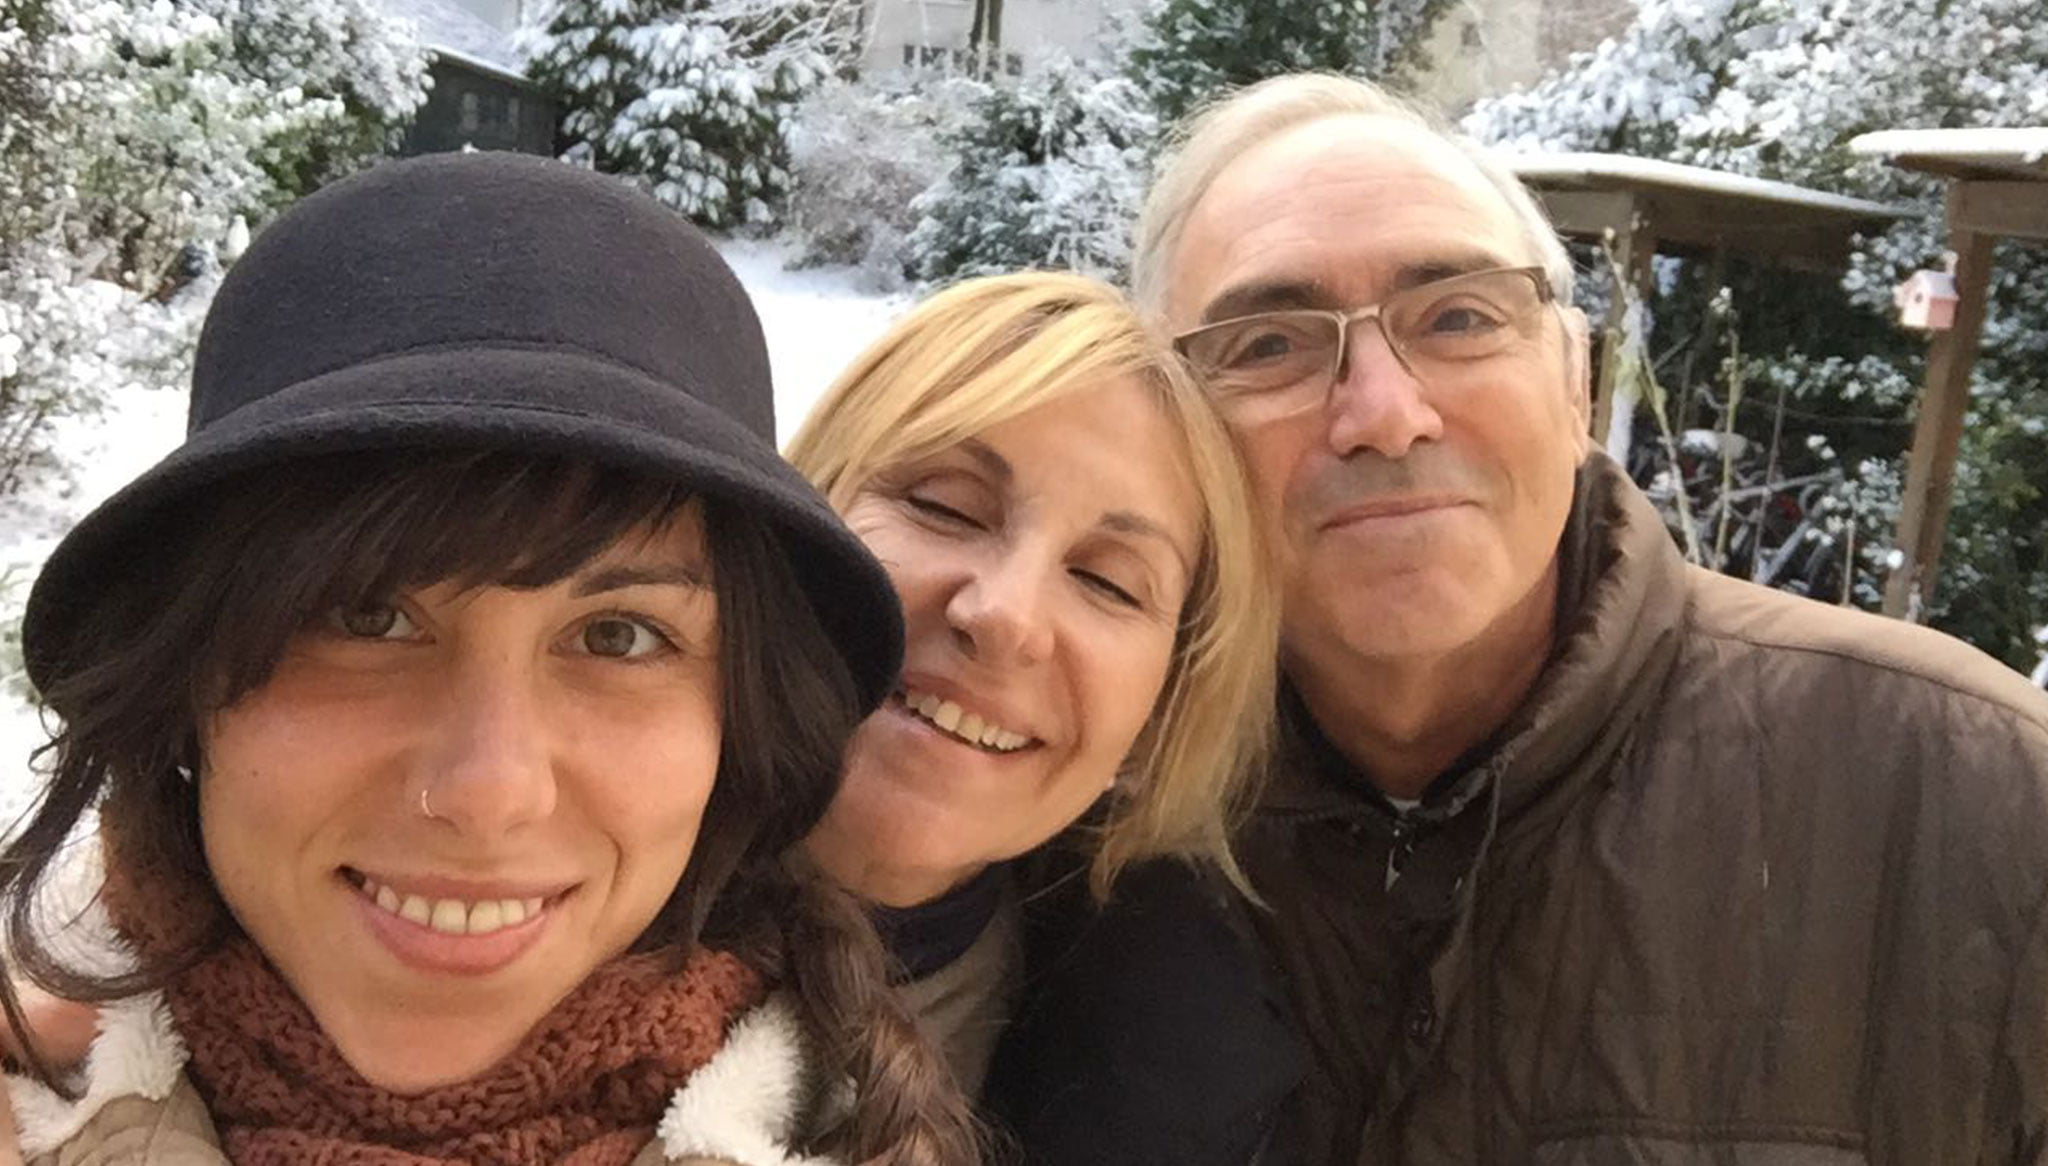 Una imagen familiar: los padres de Lucía, Paco y Mati, de visita en Alemania el invierno pasado